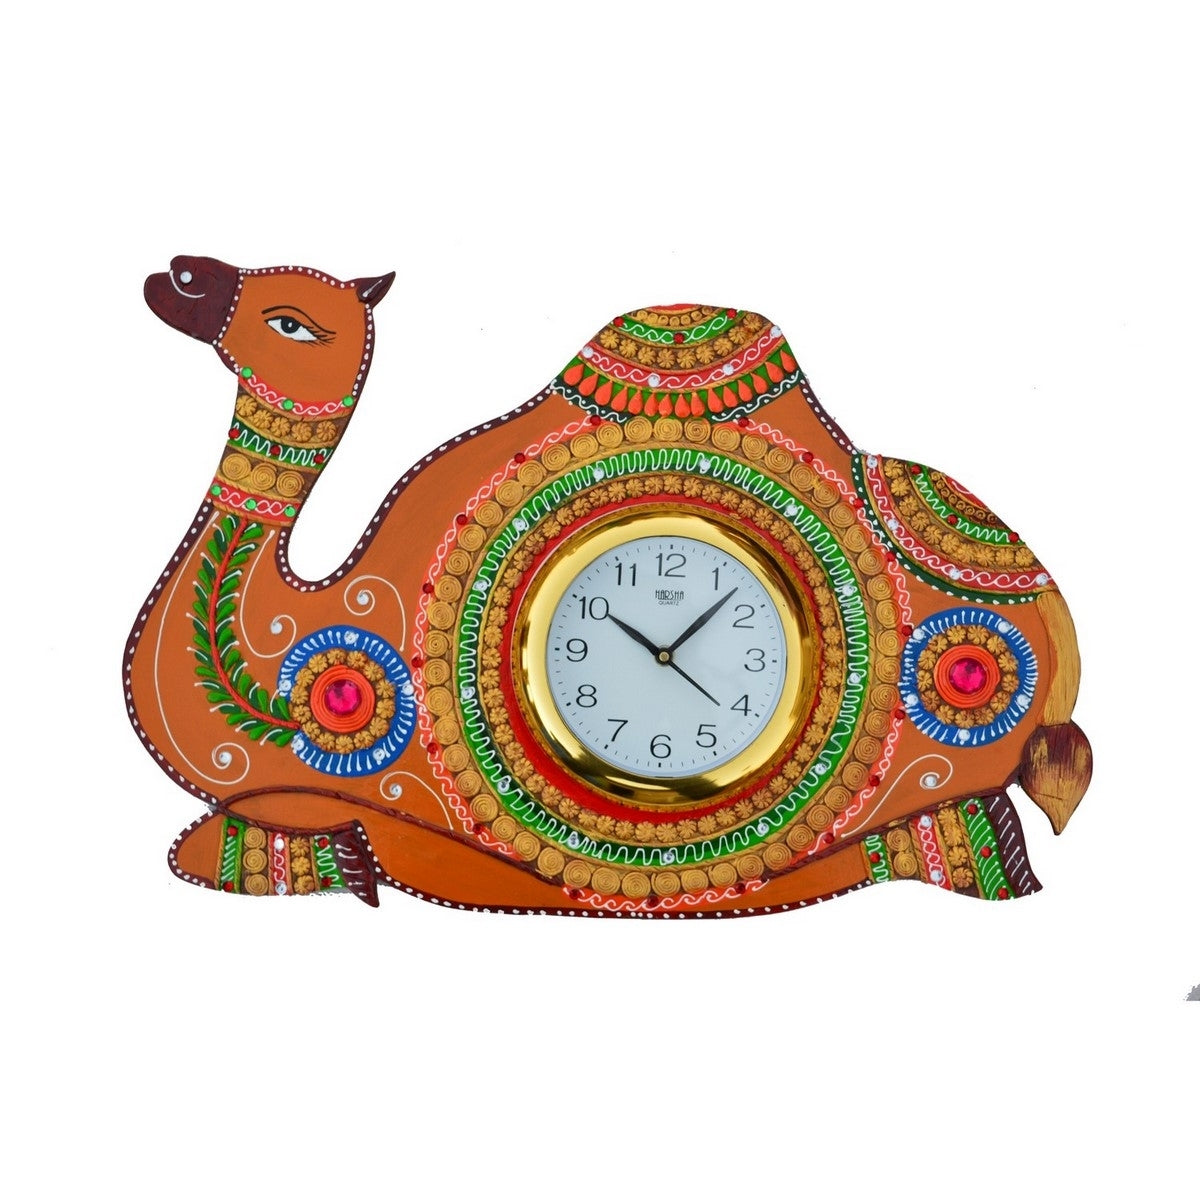 Papier-Mache Camel Handcrafted Wall Clock